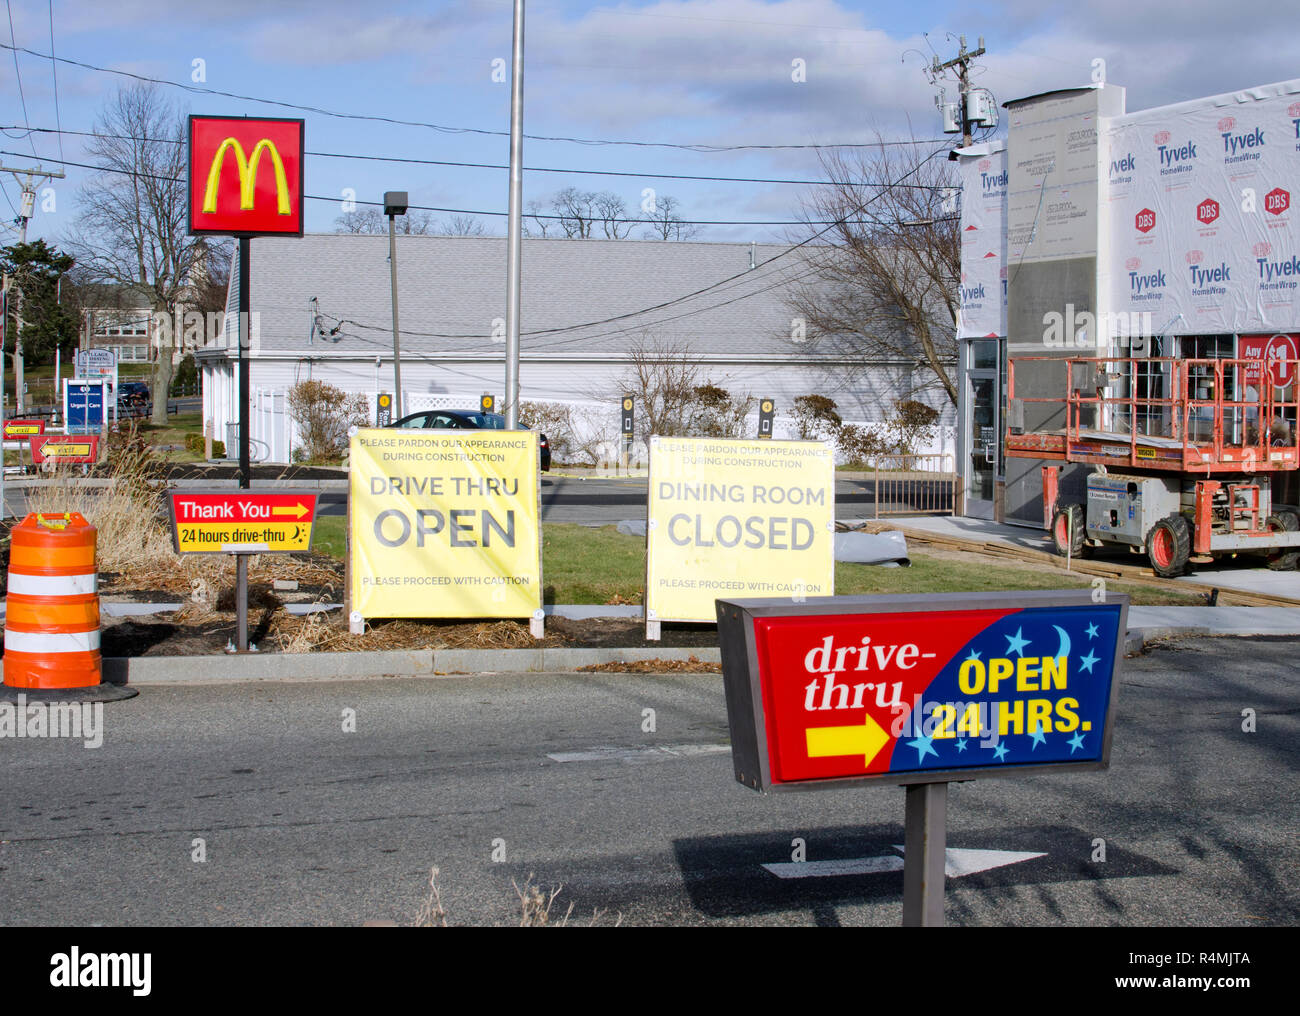 Restaurante de comida rápida McDonalds está remodelando con drive thru abierto y comedor cerrado signos en Falmouth, Cape Cod, Massachusetts, EE.UU. Foto de stock